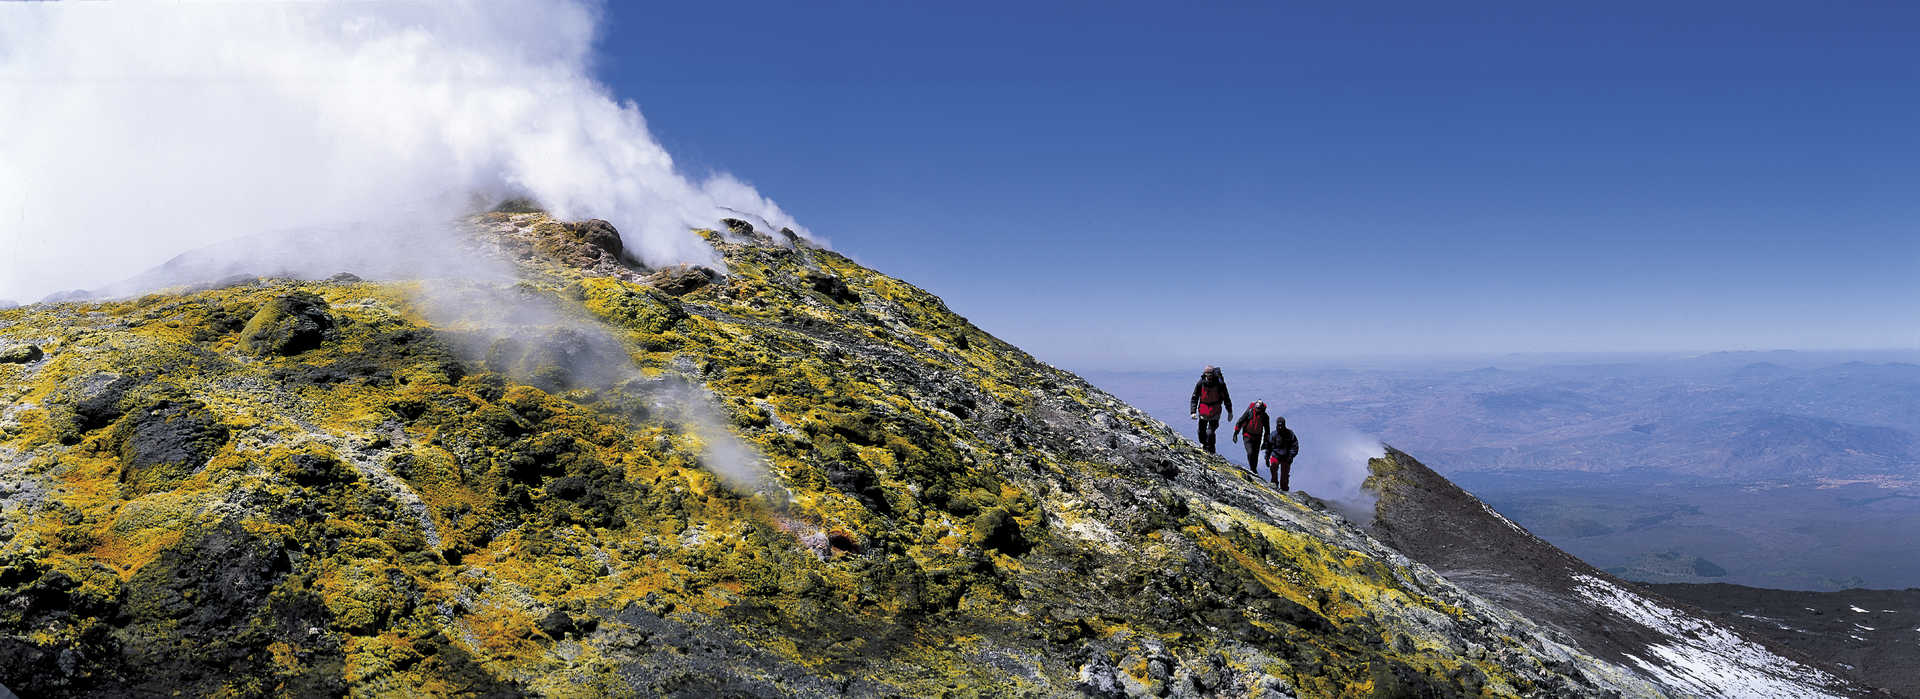 Trek - Les îles Éoliennes : Îles Eoliennes et randonnée volcanique en Sicile